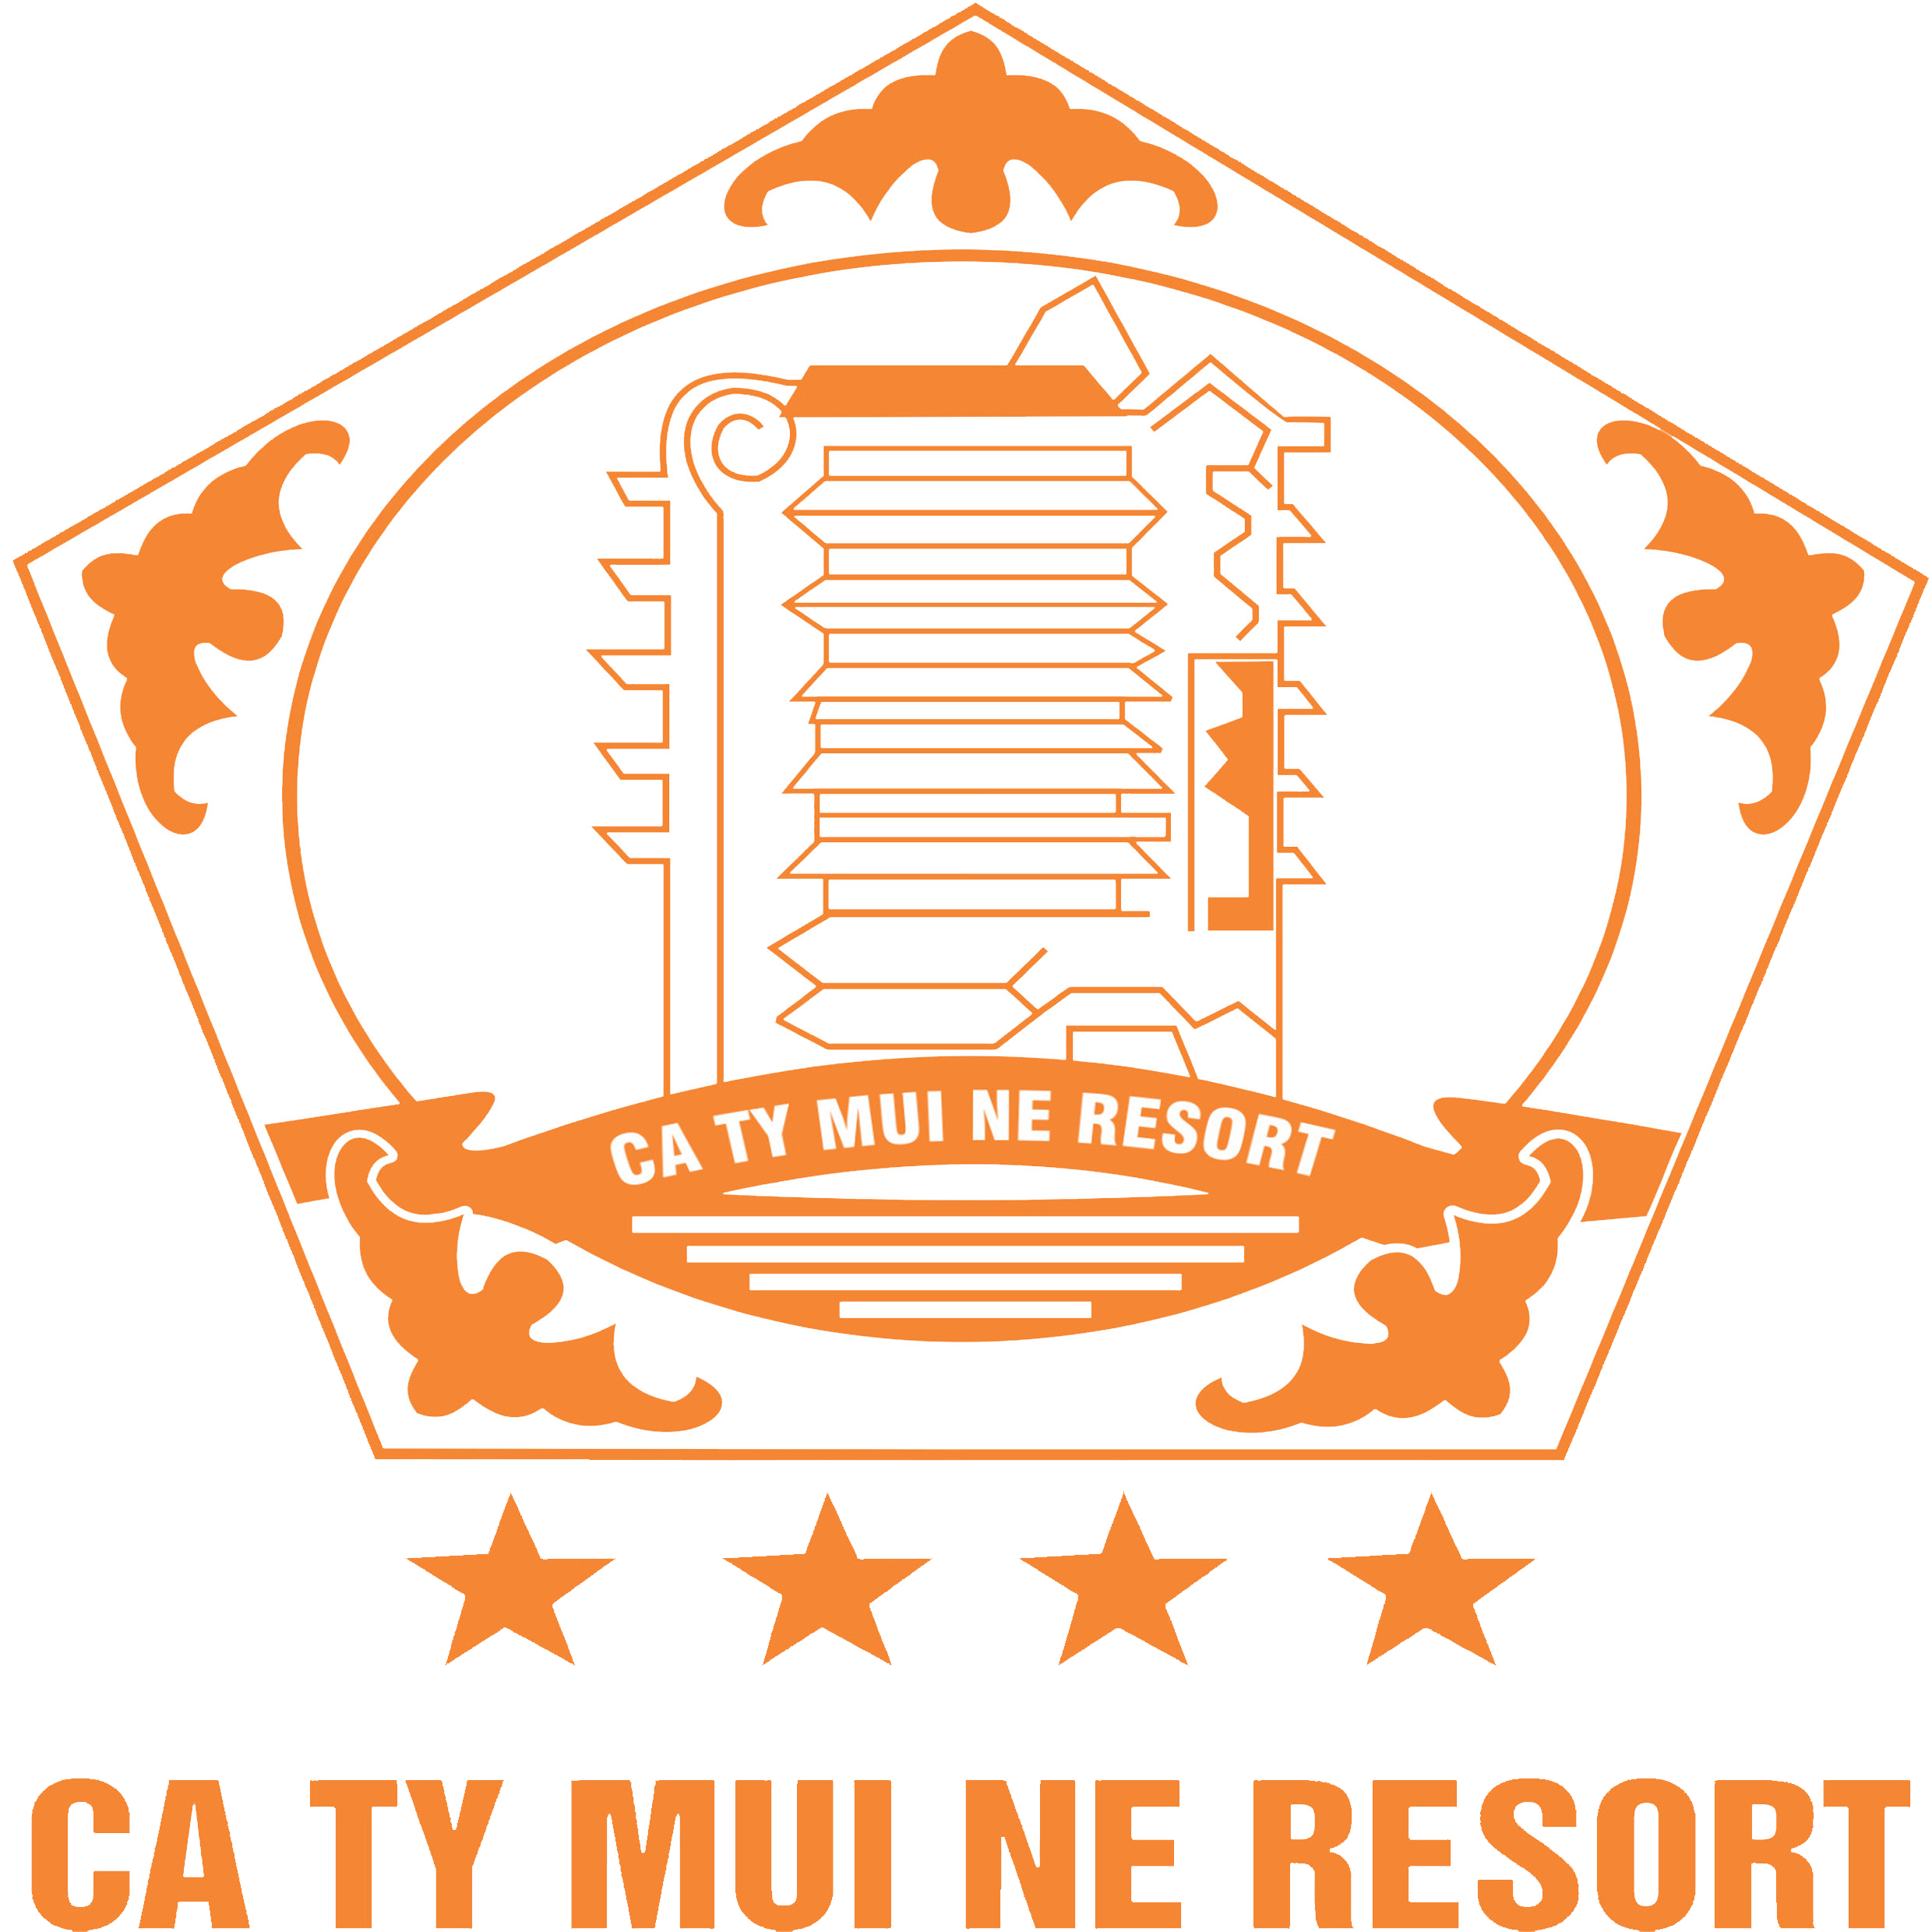  Caty Muine Beach Resort & Spa